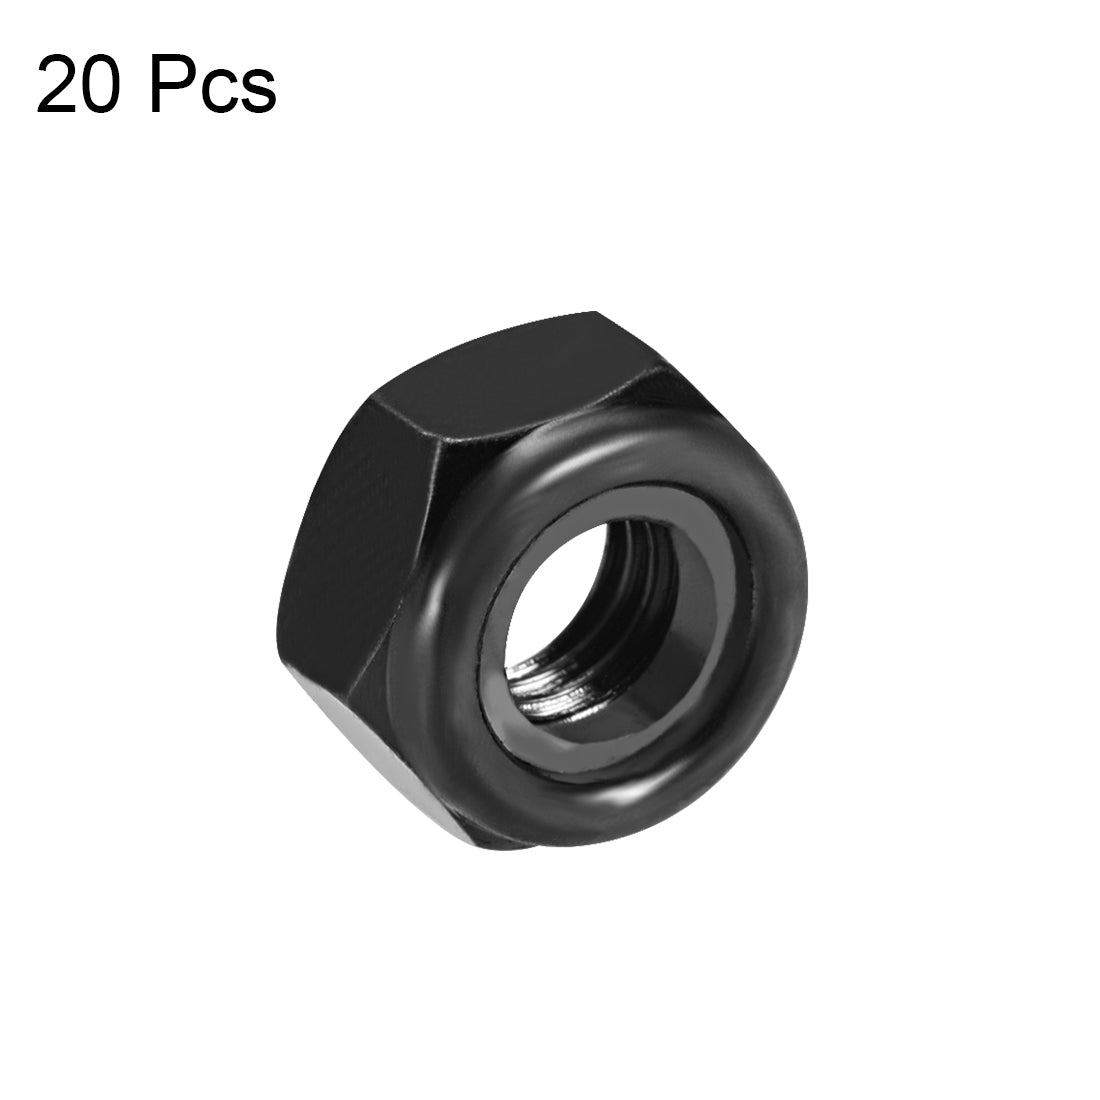 uxcell Uxcell M10x1.5mm Hex Lock Nuts Carbon Steel Nylon Insert Self-Lock Nuts, 20Pcs Black